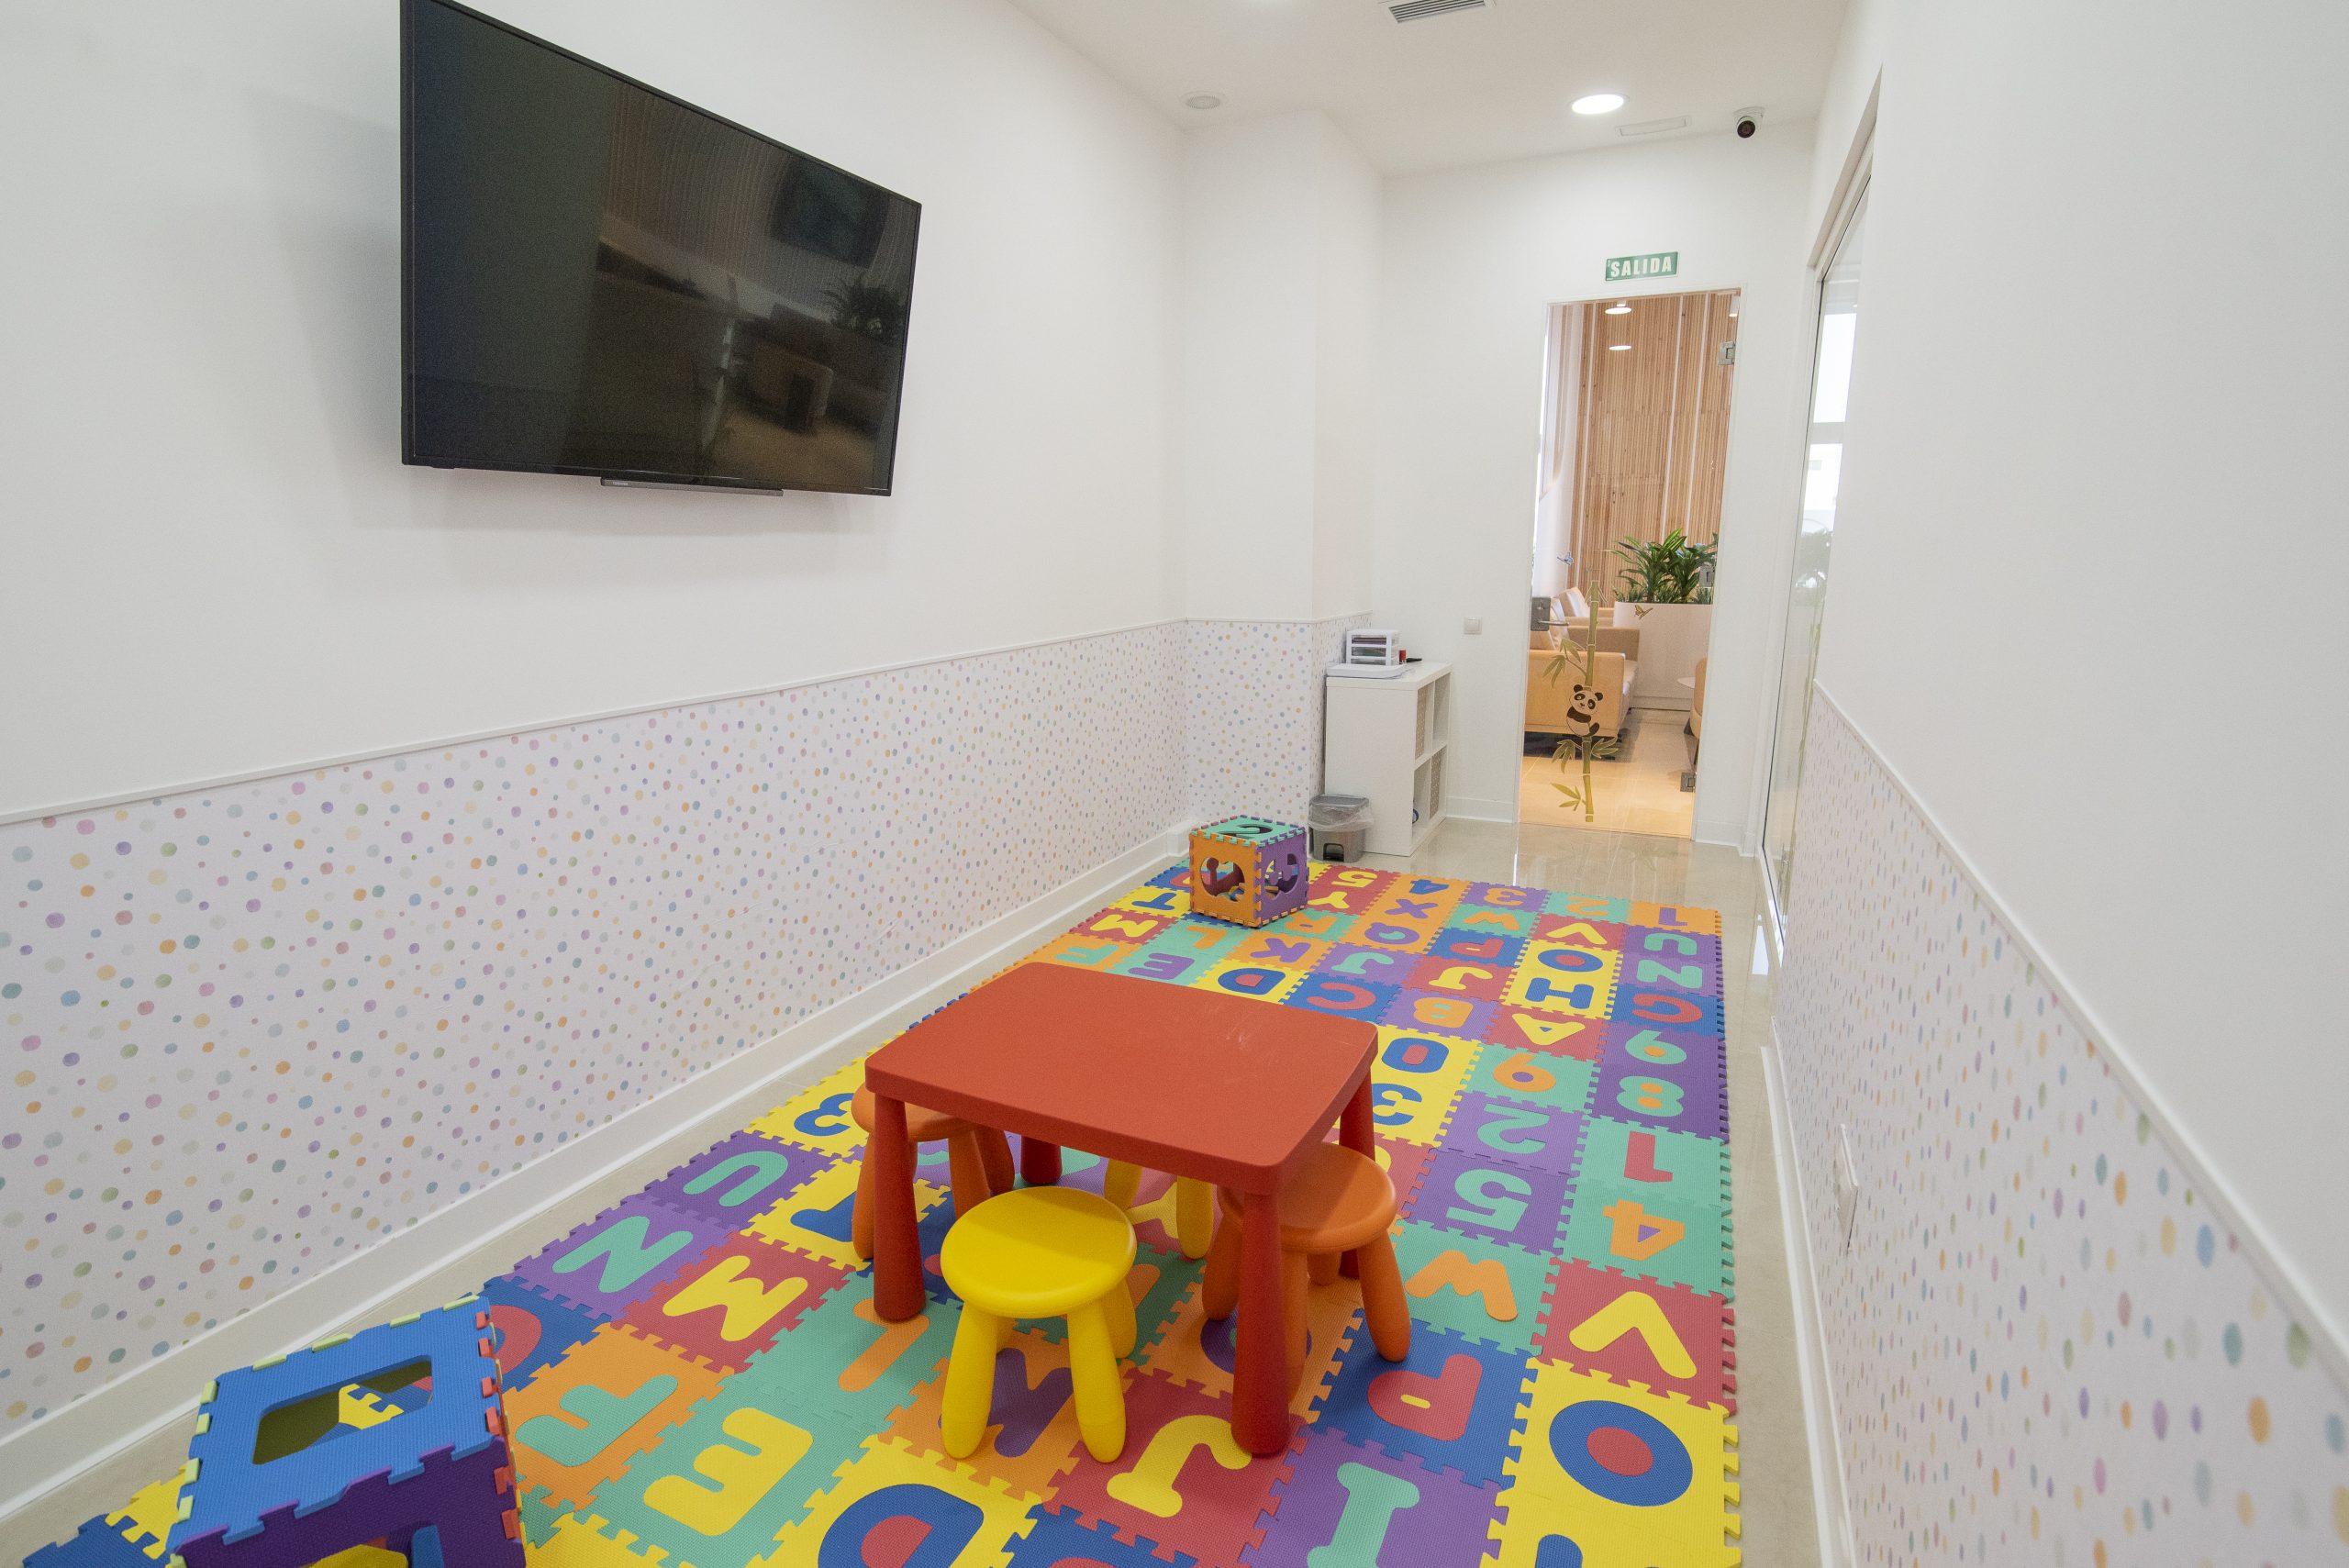 Fotografía de sala de juegos infantil, con mobiliario pequeño y colorido, y paredes blancas